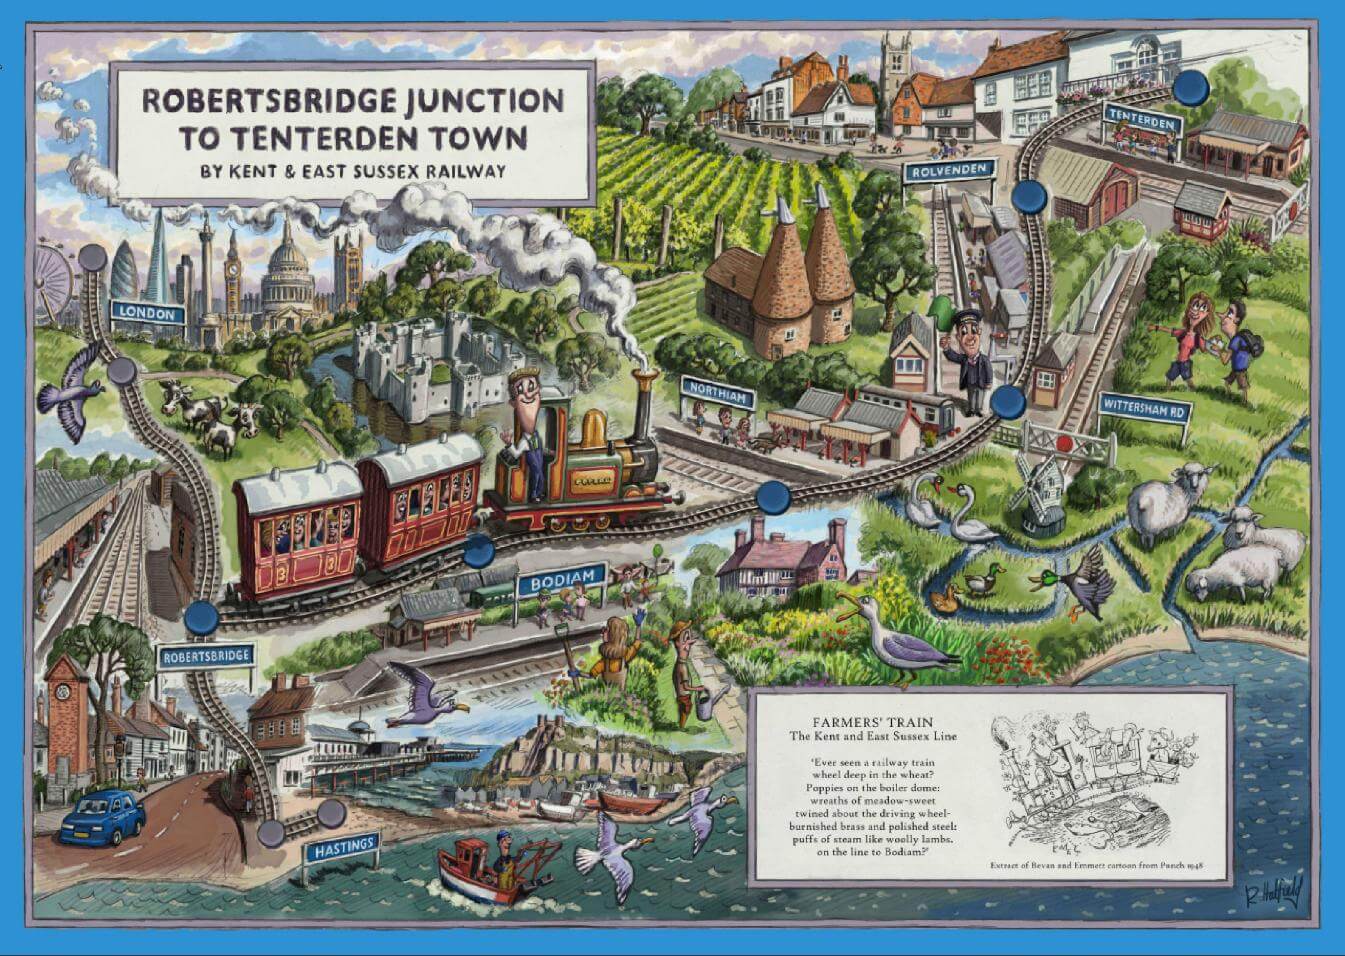 Illustration of the Kent & East Sussex Railway. Robertsbridge Junction to Tenterden Town.